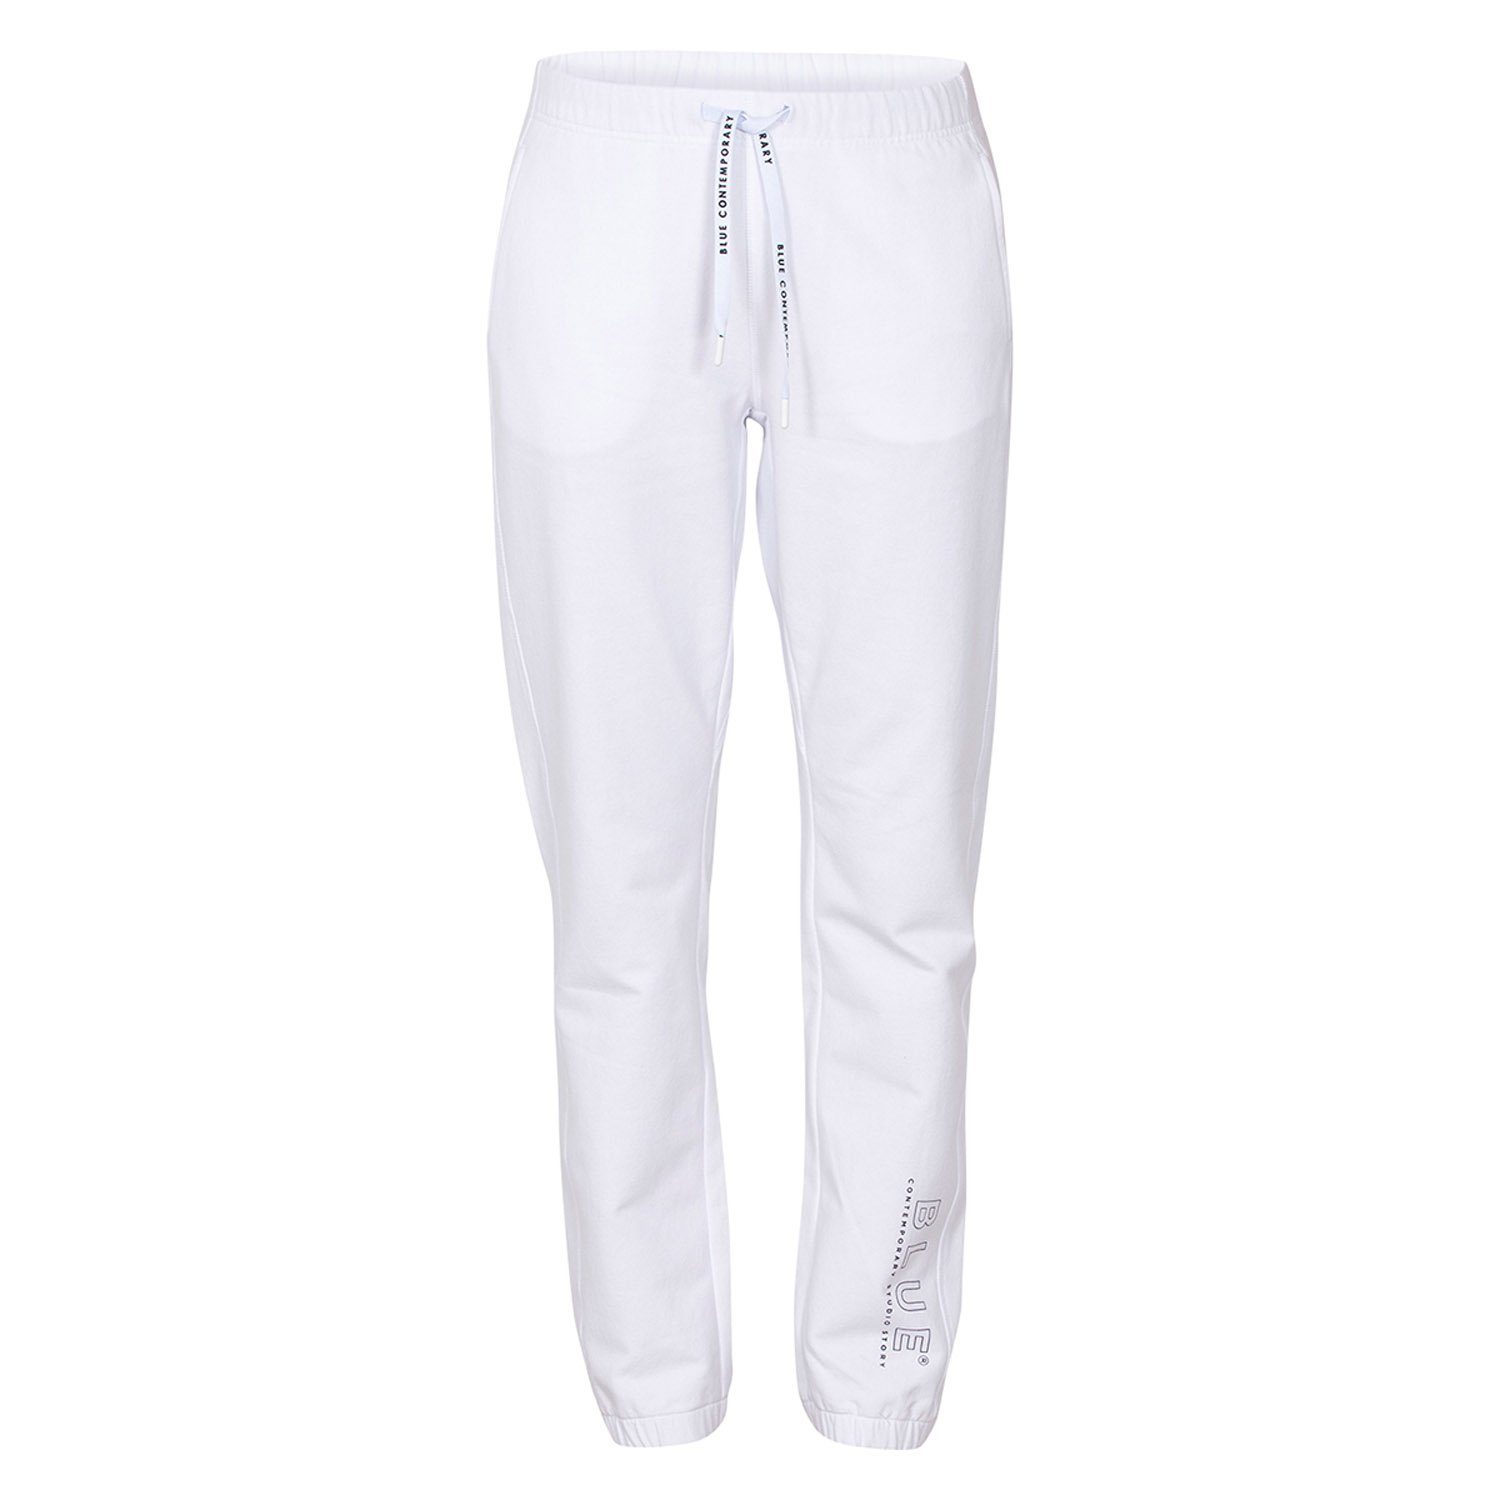 Pants versch. Jogginghose mit Aufdruck Baumwolle Base Jogger Weiß Blue aus in und Sportswear Gummizug Farben